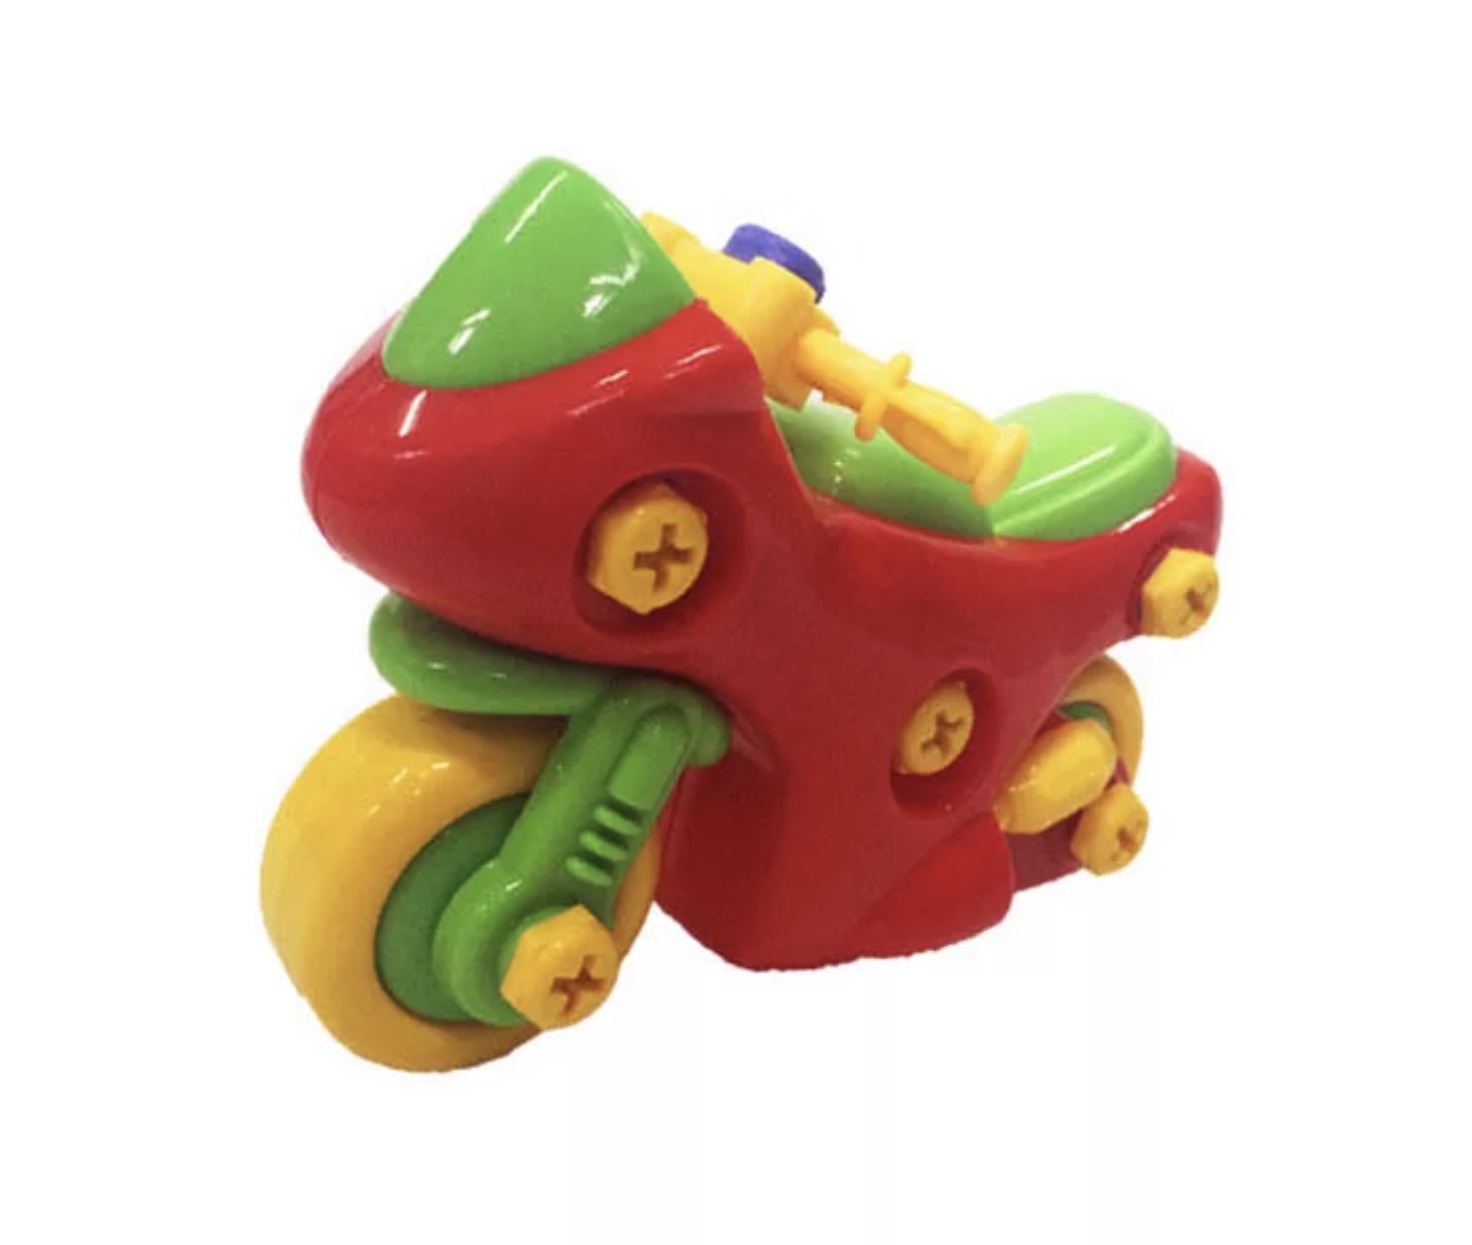 Pază din plastic de tip motocicletă pentru copii de vârsta de trei ani acest produs toxic frumos colorat joc care se poate juca și să se desfacă sau le facă acesta  motocicleta